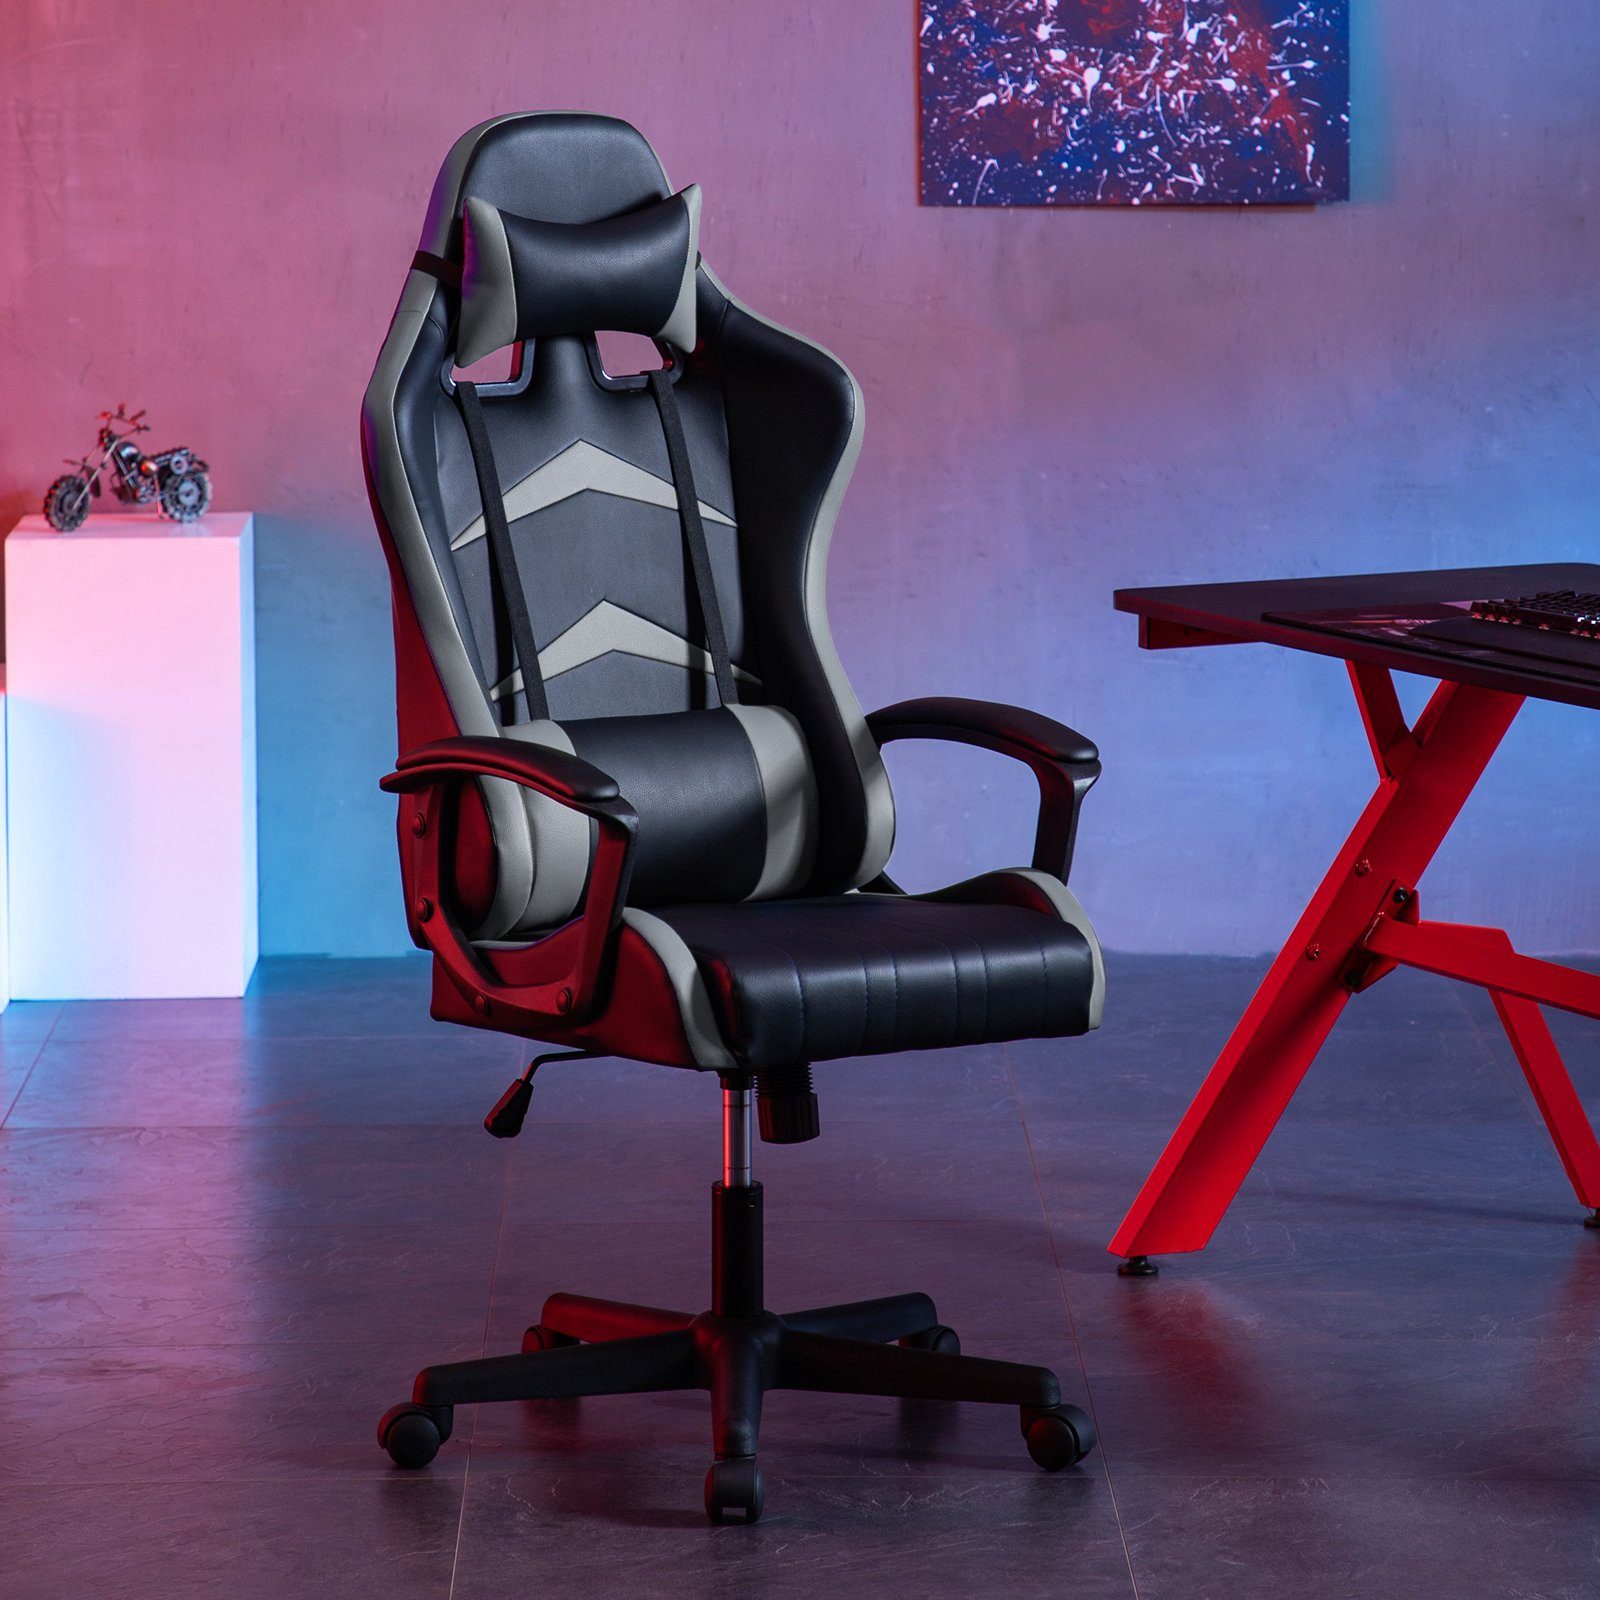 Intimate WM Heart Gaming-Stuhl mit Rückenlehne hoher Ergonomischer Verstellbarer Schreibtischstuhl grau